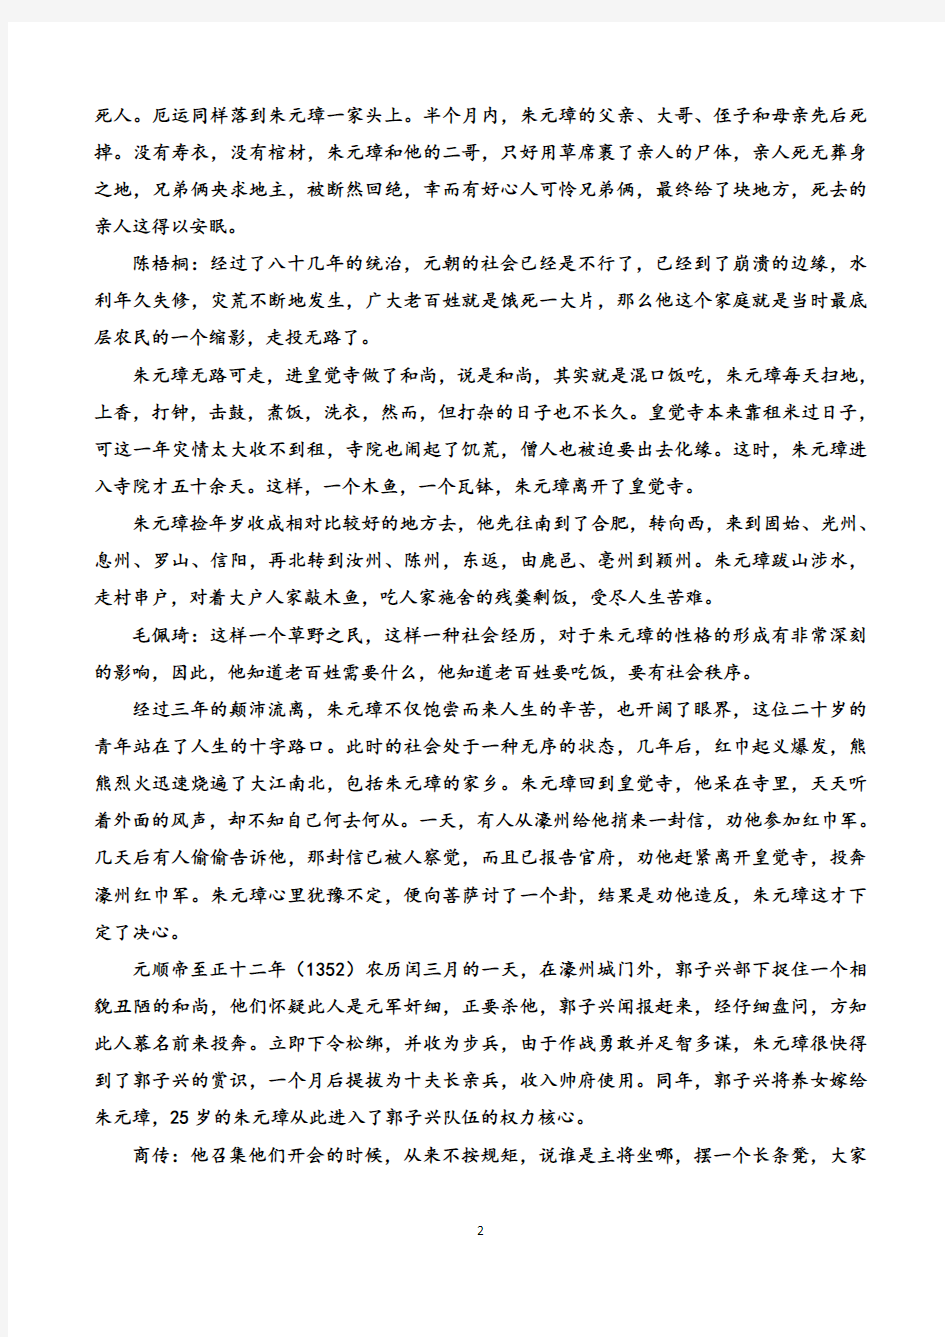 中国通史解说词第76-80合集(缺77.78.80)